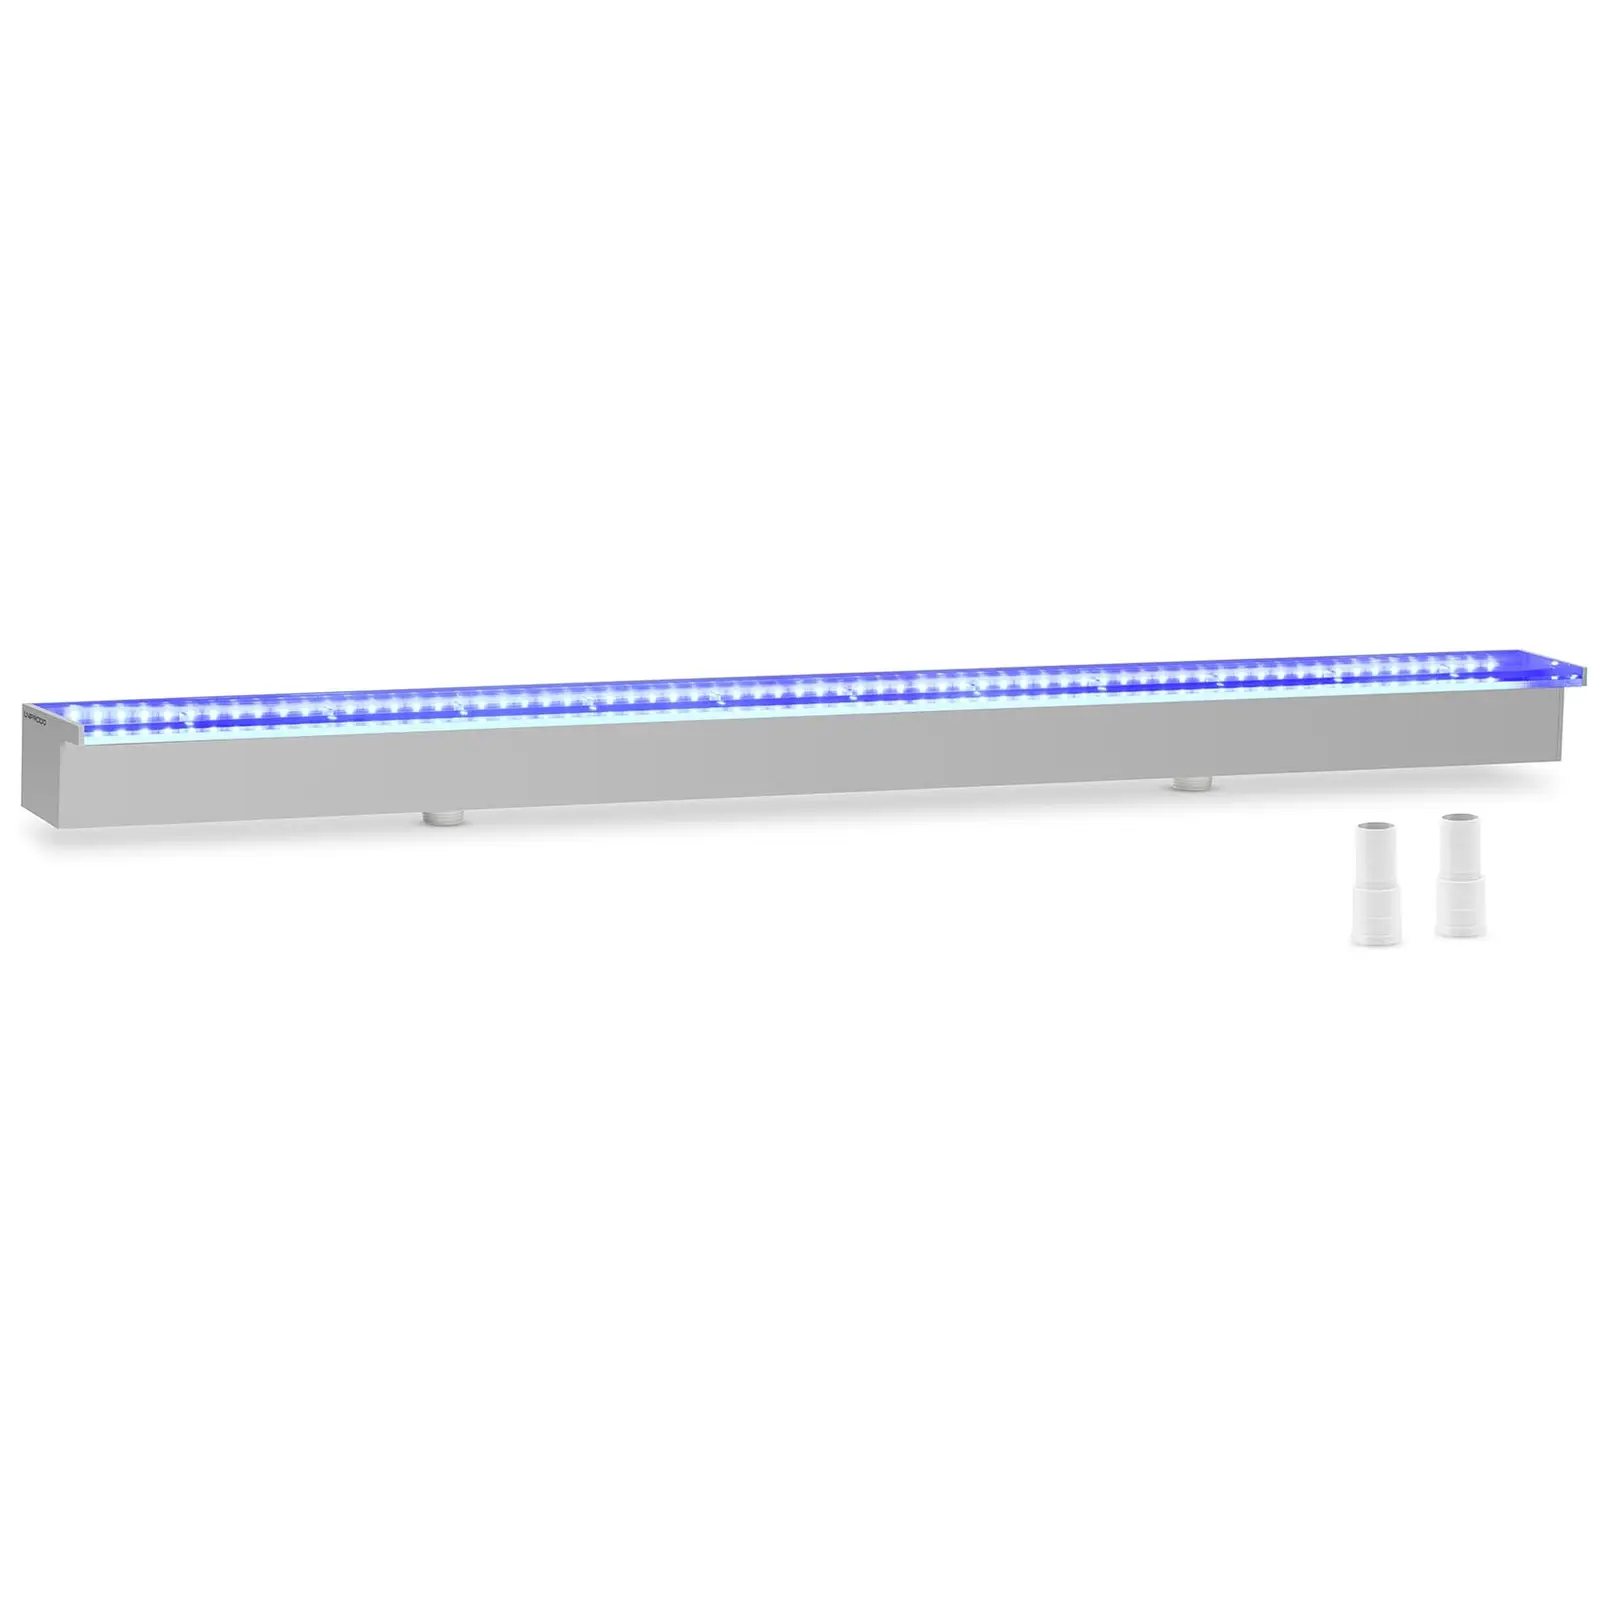 Medence szökőkút - 120 cm - LED világítás - kék/fehér - 30 mm-es vízkivezető nyílás